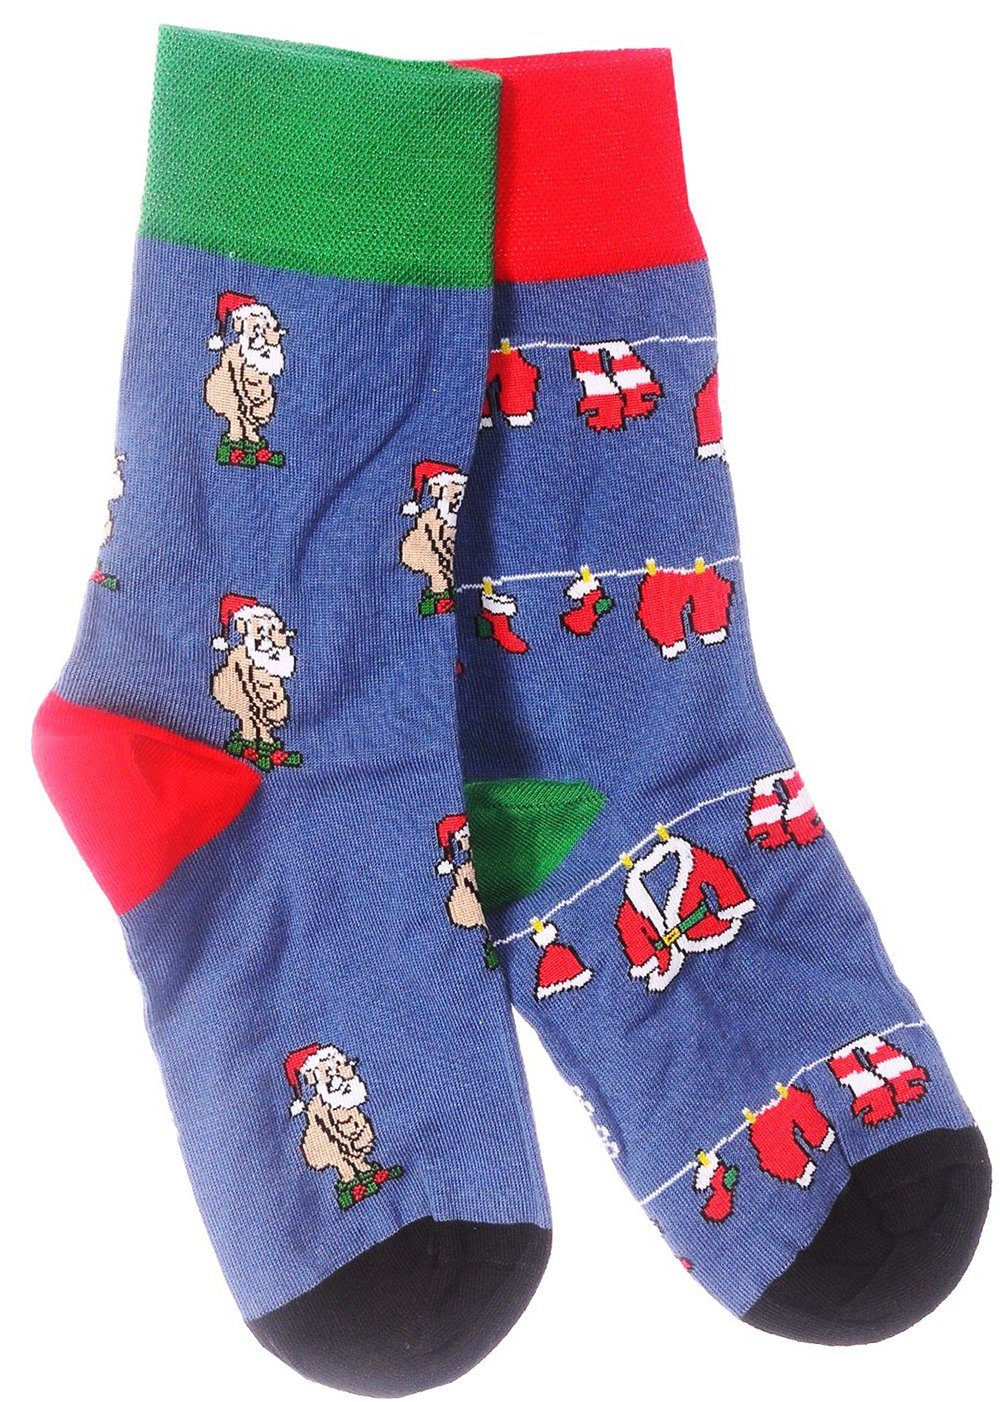 Martinex Socken Socken Freizeitsocken 1 Paar Socken Strümpfe 35 38 39 42 43 46 Weihnachtssocken, festlich, weihnachtlich, für die ganze Familie